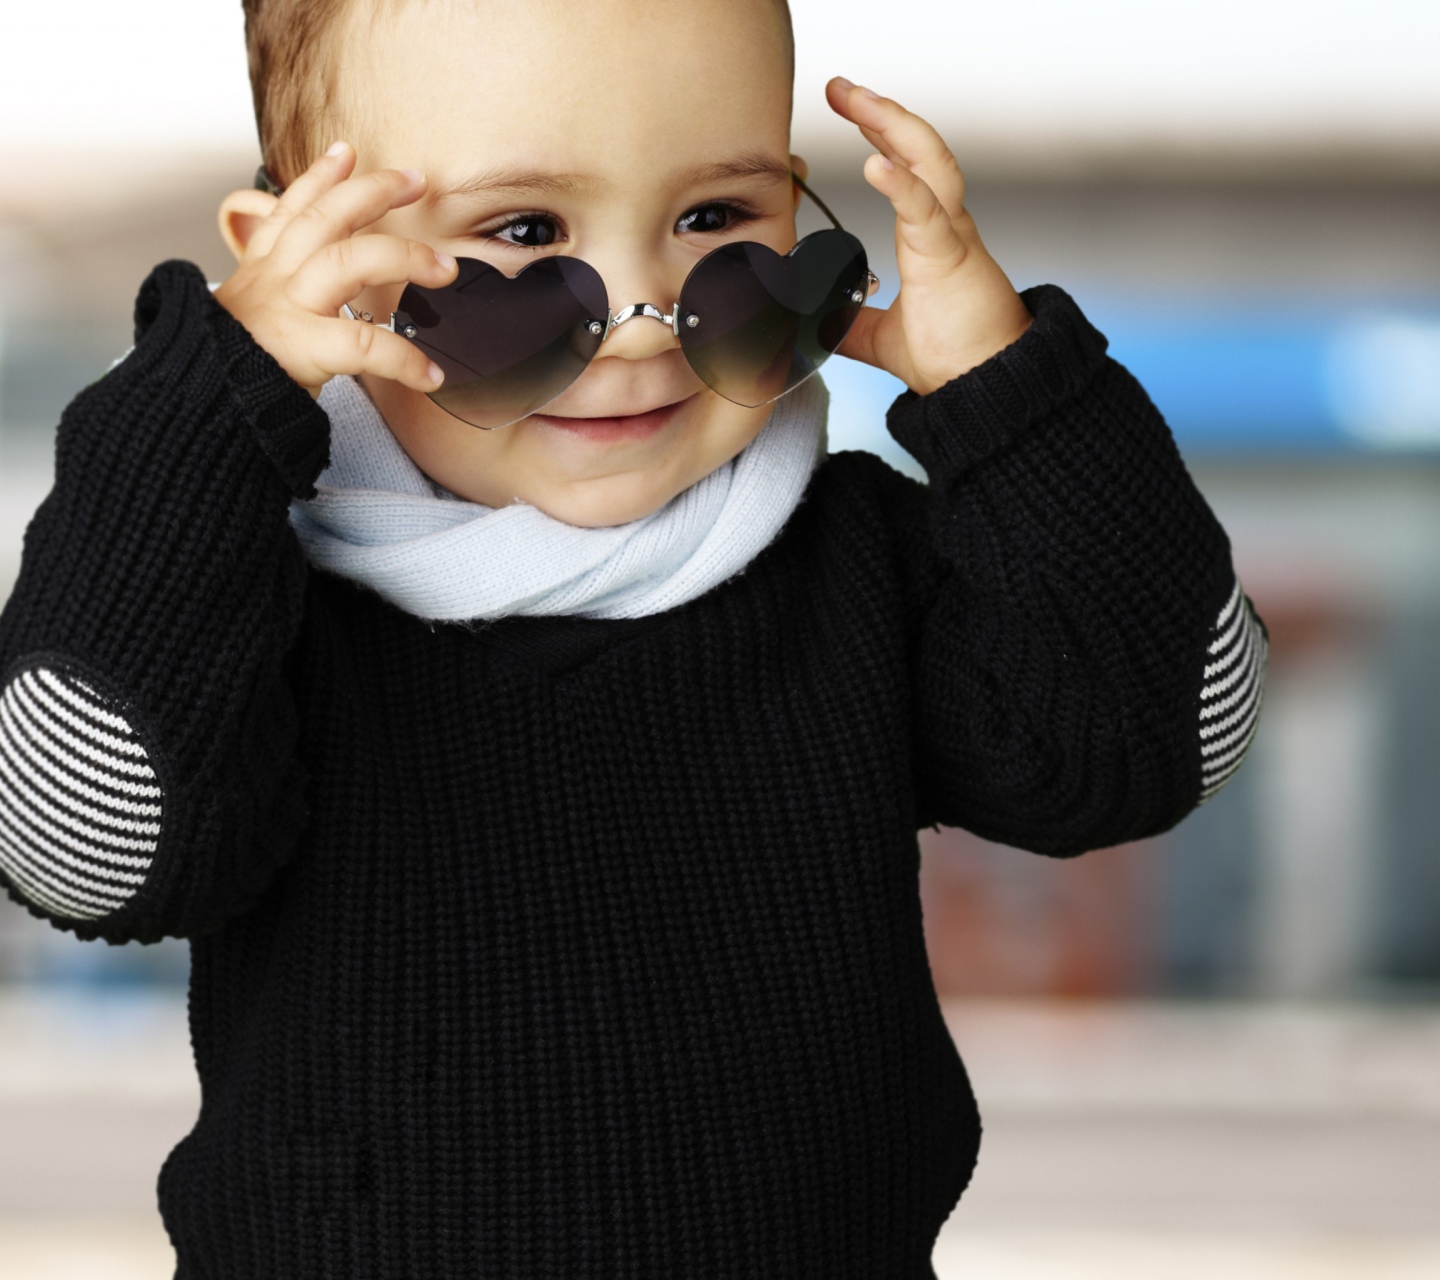 Baby Boy In Heart Glasses wallpaper 1440x1280